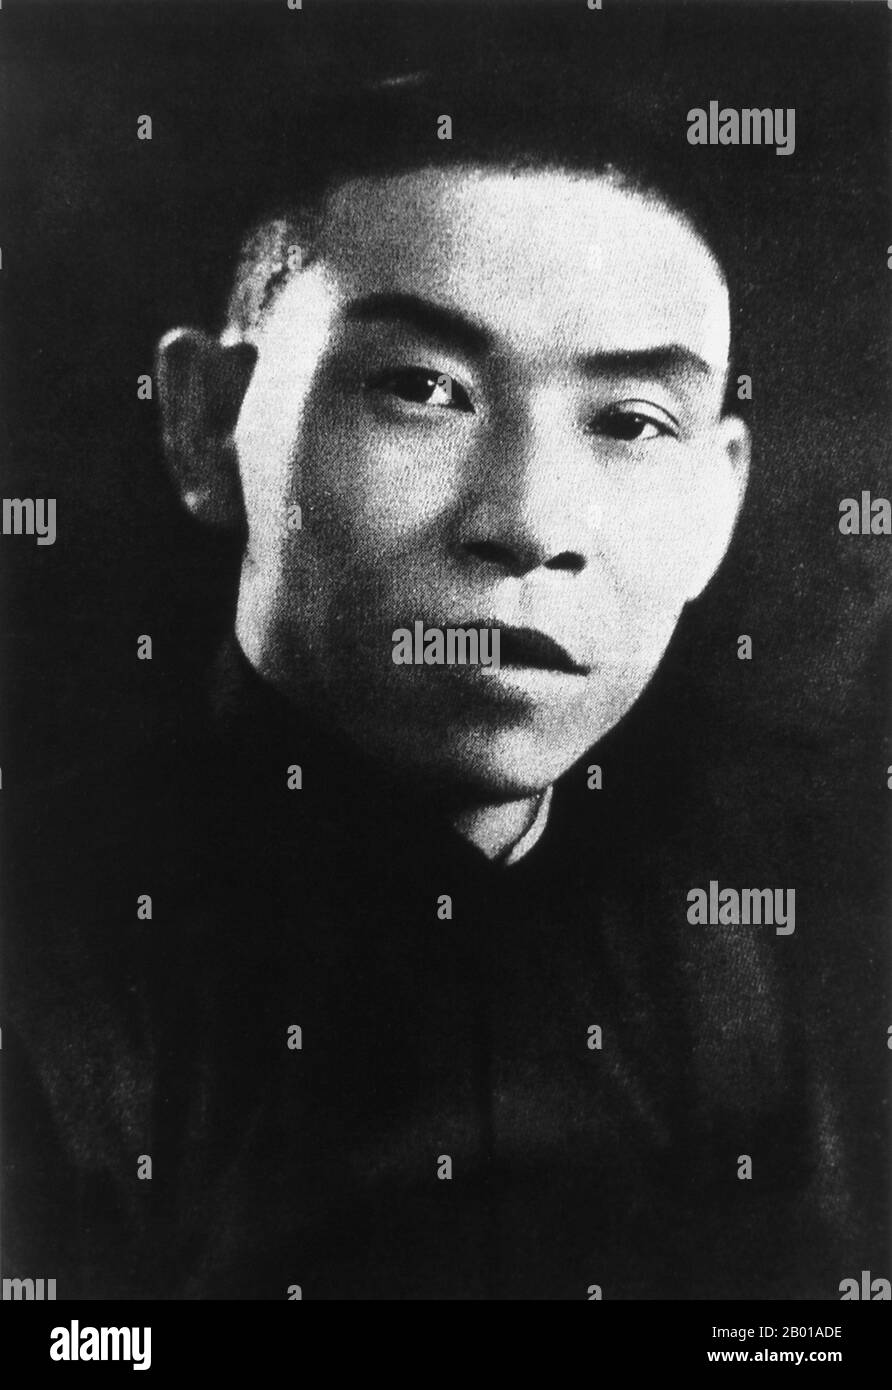 China: Du Yuesheng, Green Gang Mobster und Shanghai Pate (22. August 1887 - 16. August 1951) als junger Mann, c.. 1935. Du Yuesheng (TU Yüeh-sheng), allgemein bekannt als 'Big-Ears Du', war ein chinesischer Gangster, der einen Großteil seines Lebens in Shanghai verbrachte. Er war ein wichtiger Unterstützer der Kuomintang (KMT; aka Nationalisten) und Chiang Kai-shek in ihrem Kampf gegen die Kommunisten während der 1920s, und war eine Figur von gewisser Bedeutung während des Zweiten Chinesisch-Japanischen Krieges. Nach dem chinesischen Bürgerkrieg und dem Rückzug der KMT nach Taiwan ging Du ins Exil nach Hongkong und blieb dort bis zu seinem Tod im Jahr 1951. Stockfoto